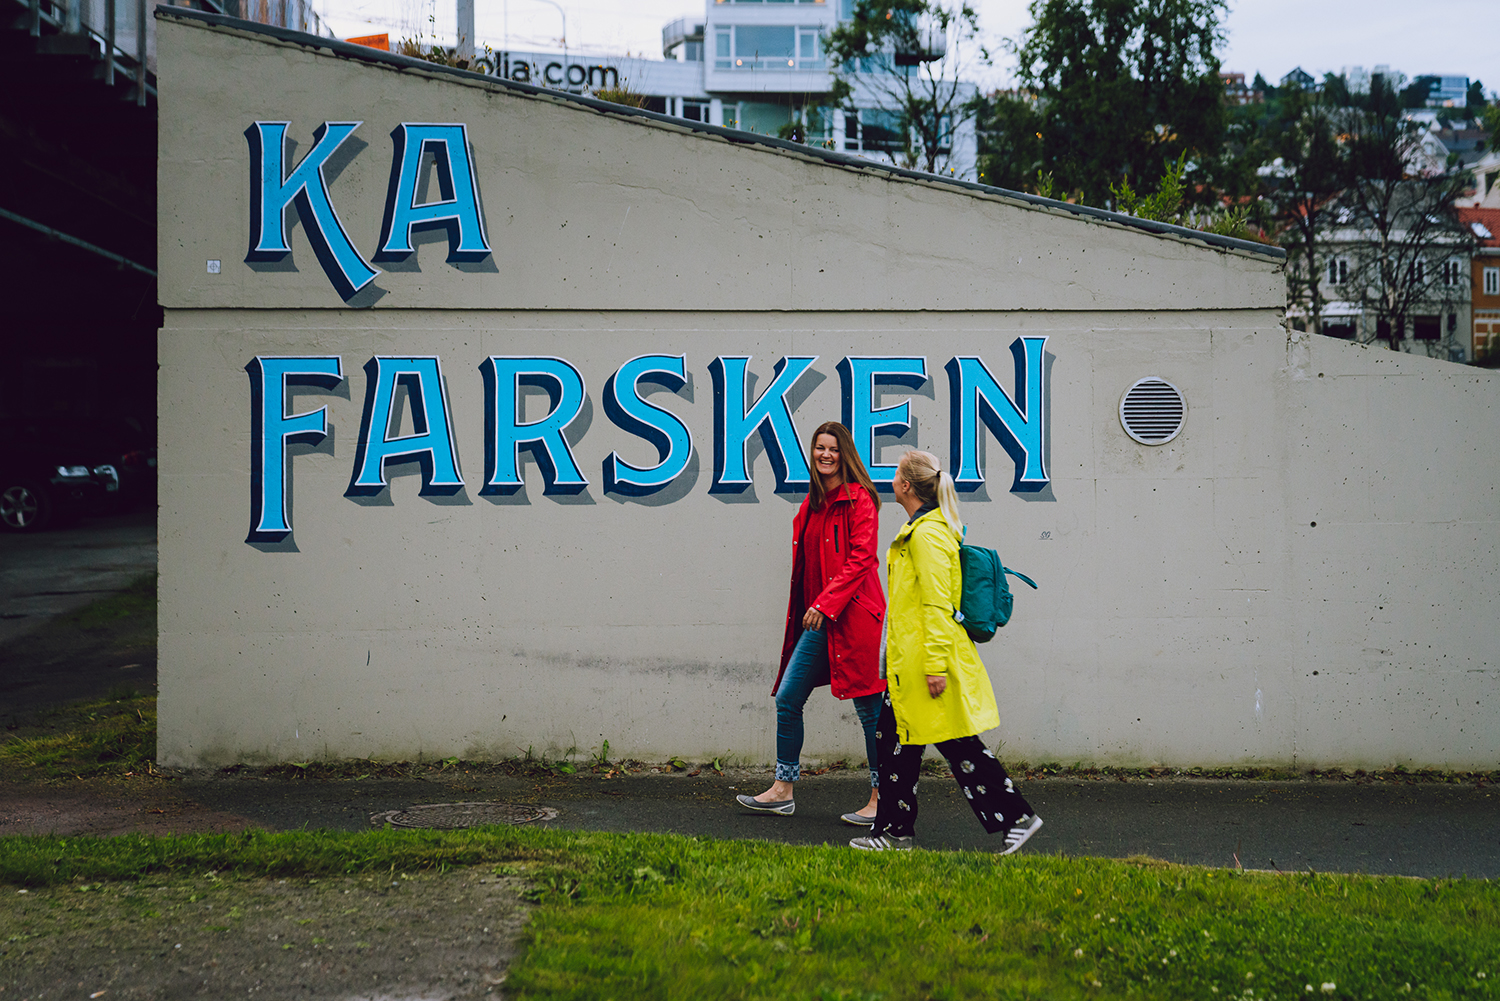 Local people in Tromsø